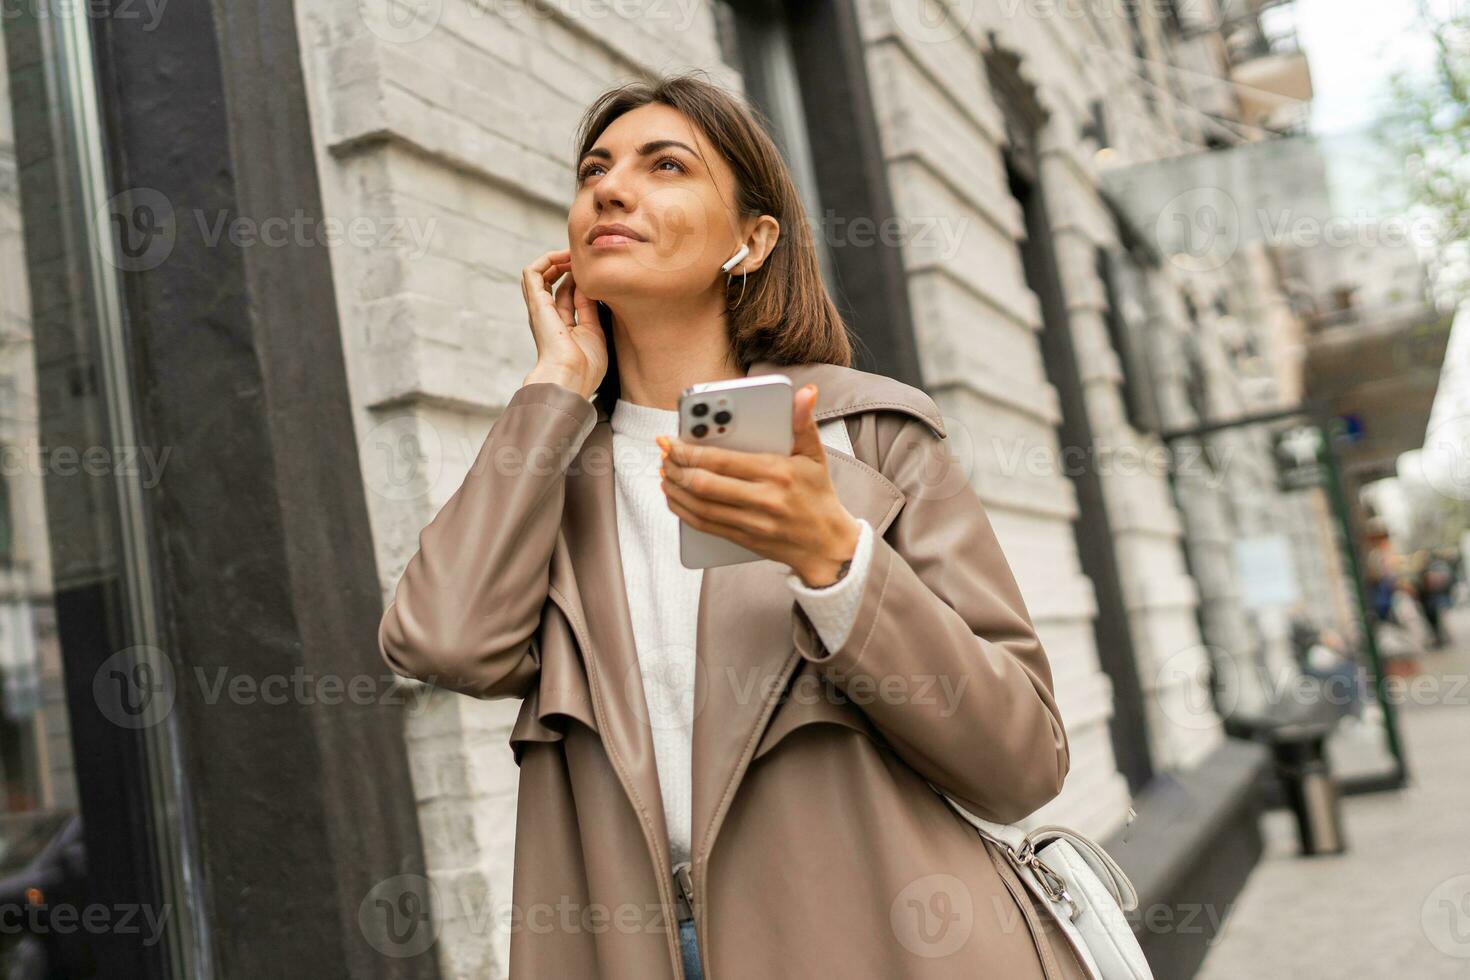 Straße Lebensstil Foto von stilvoll europäisch Geschäft Brünette Frau im Leder Mantel posieren draussen . modisch fallen Zubehör. mit Handy, Mobiltelefon Telefon.